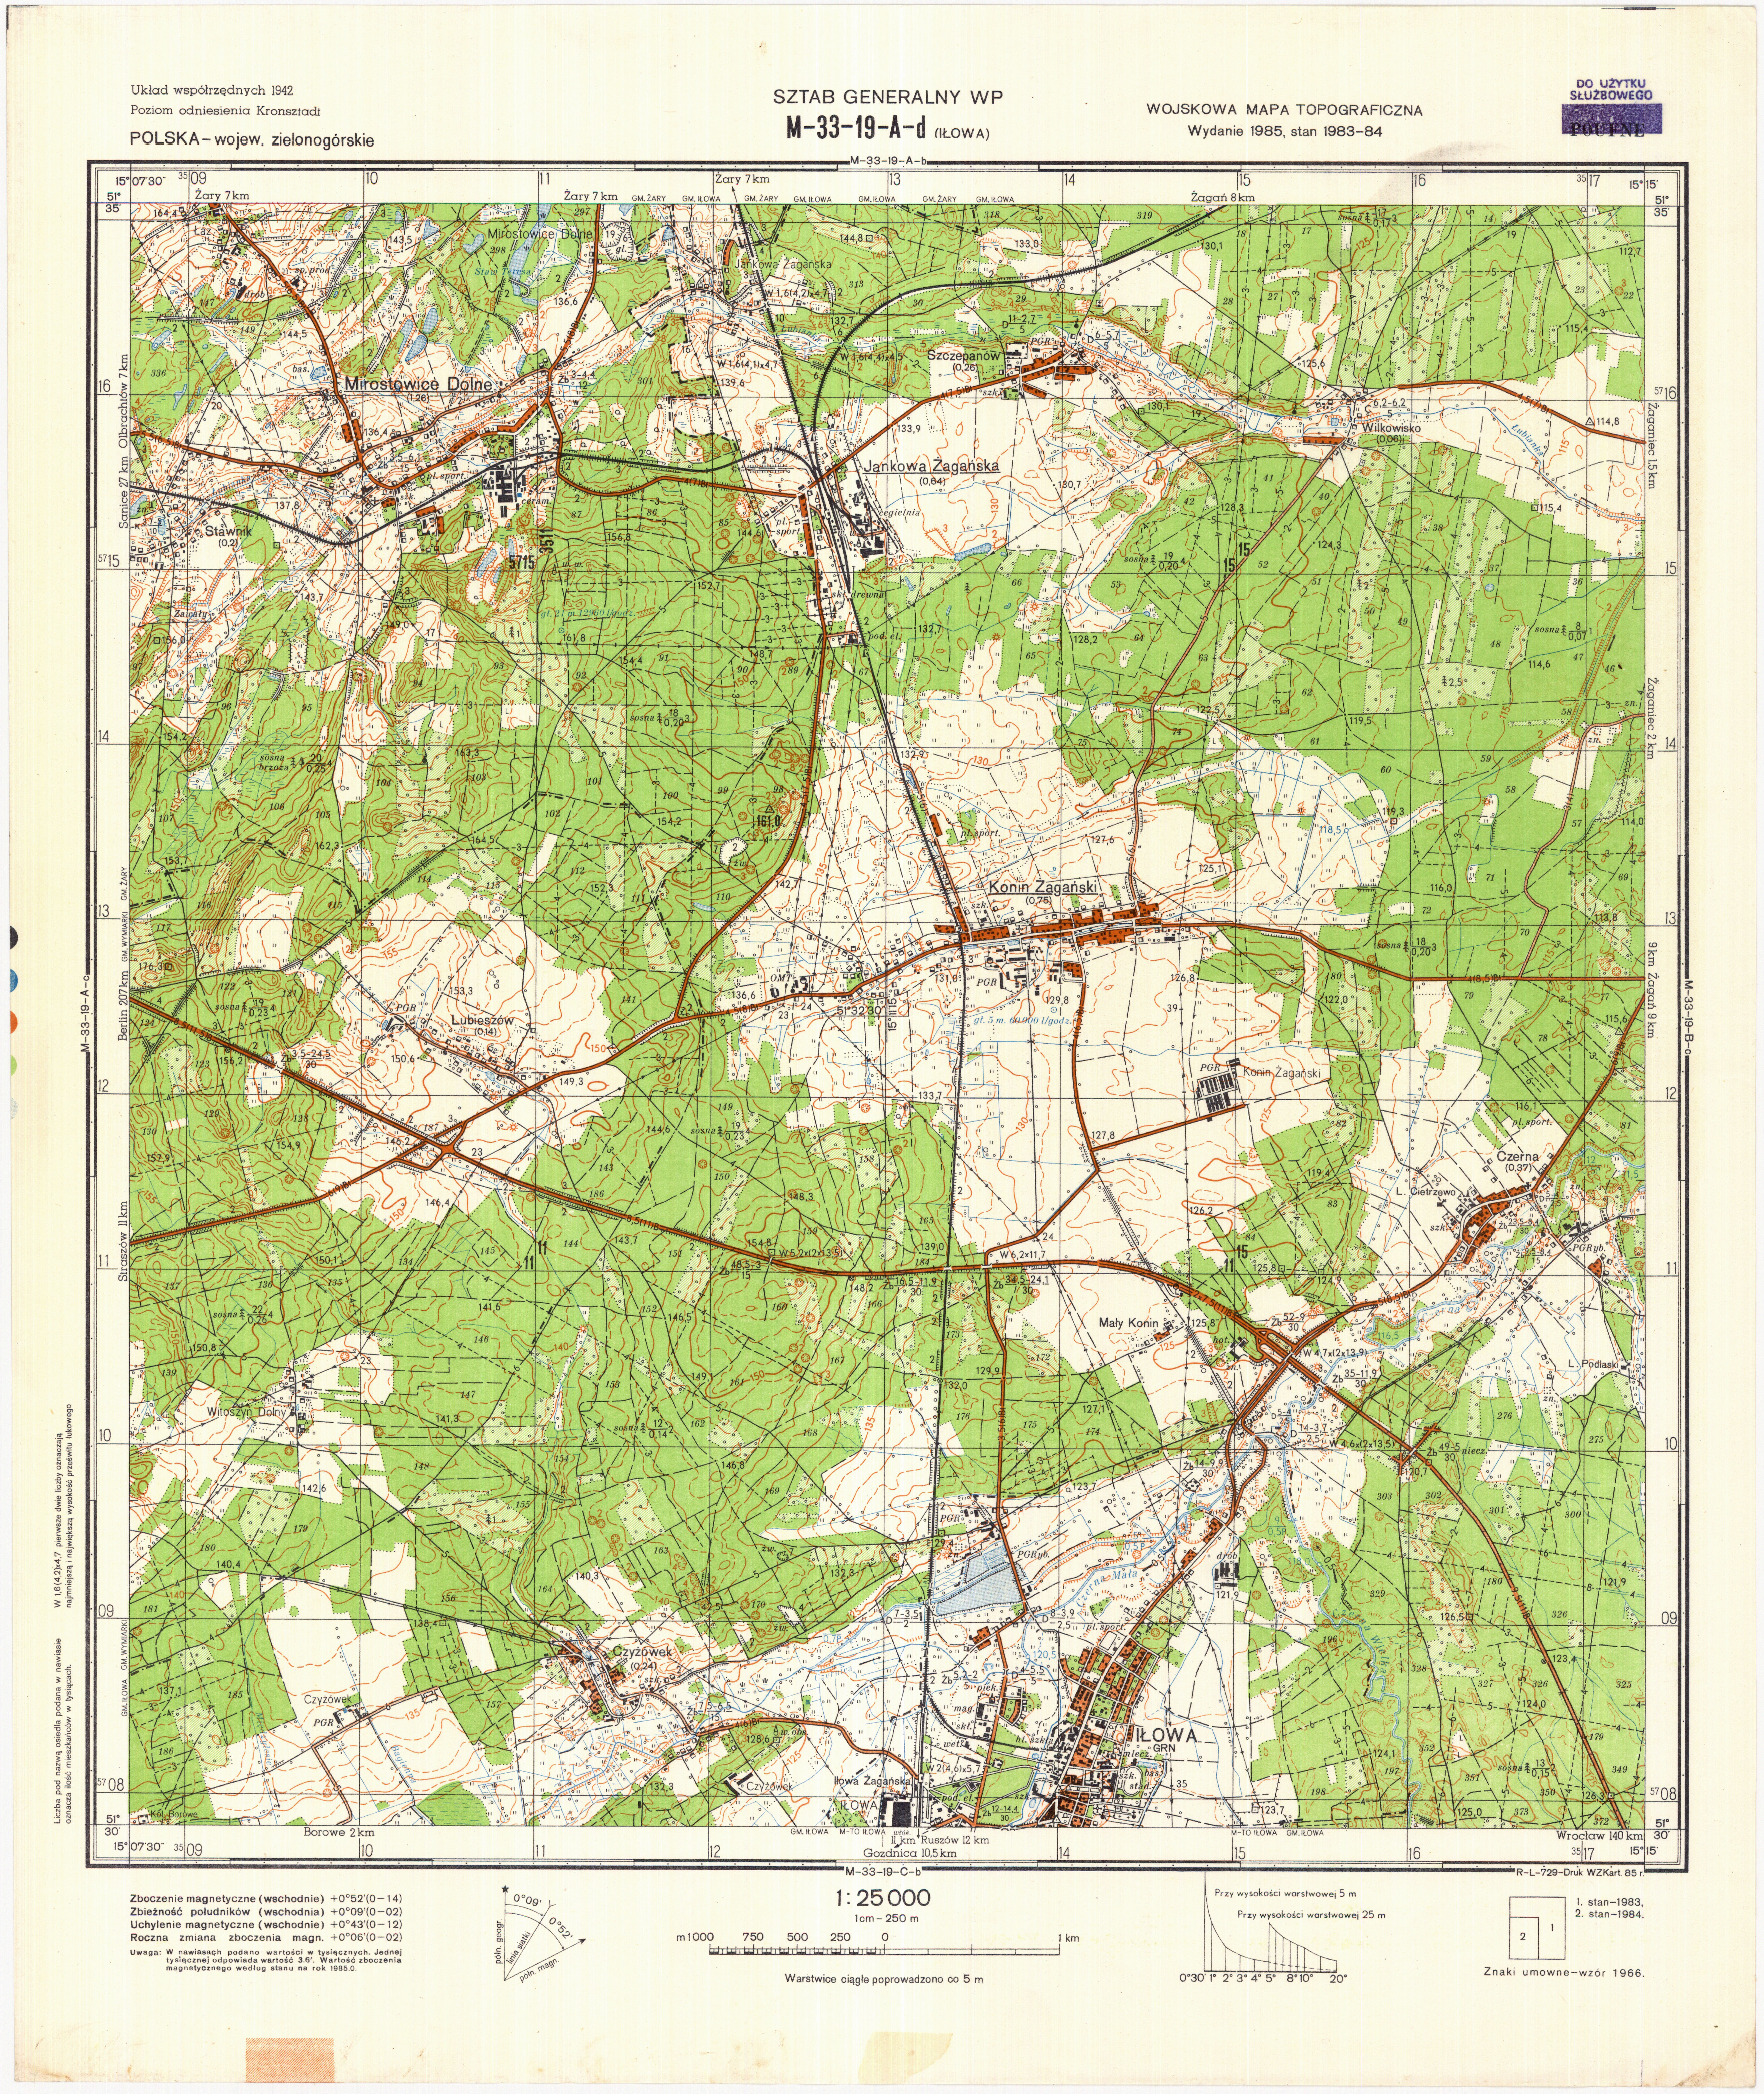 Mapy topograficzne LWP 1_25 000 - M-33-19-A-d_ILOWA_1985.jpg